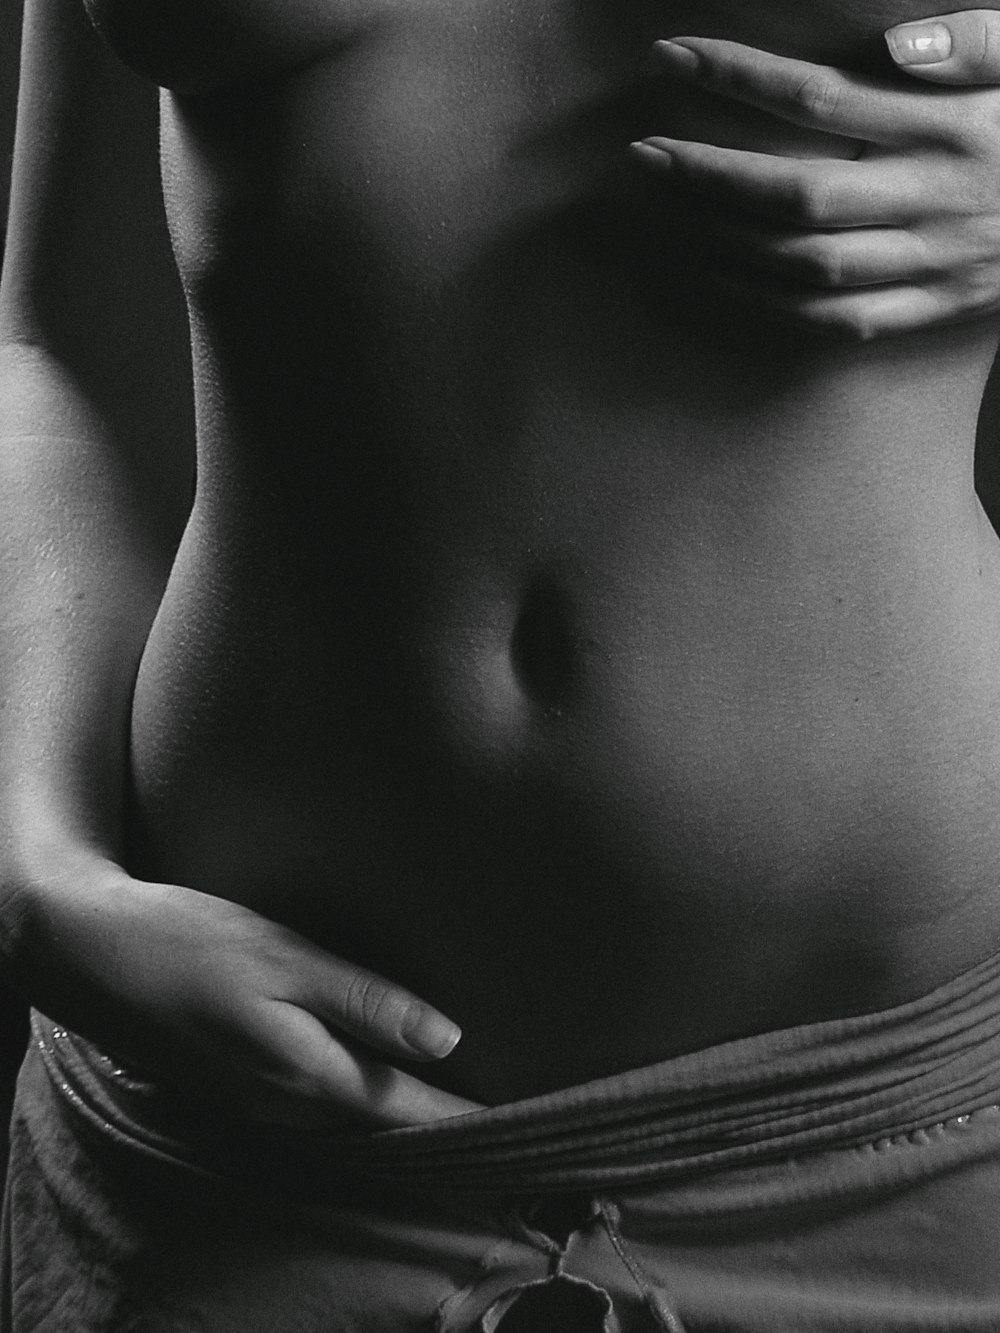 Una foto en blanco y negro del estómago de una mujer